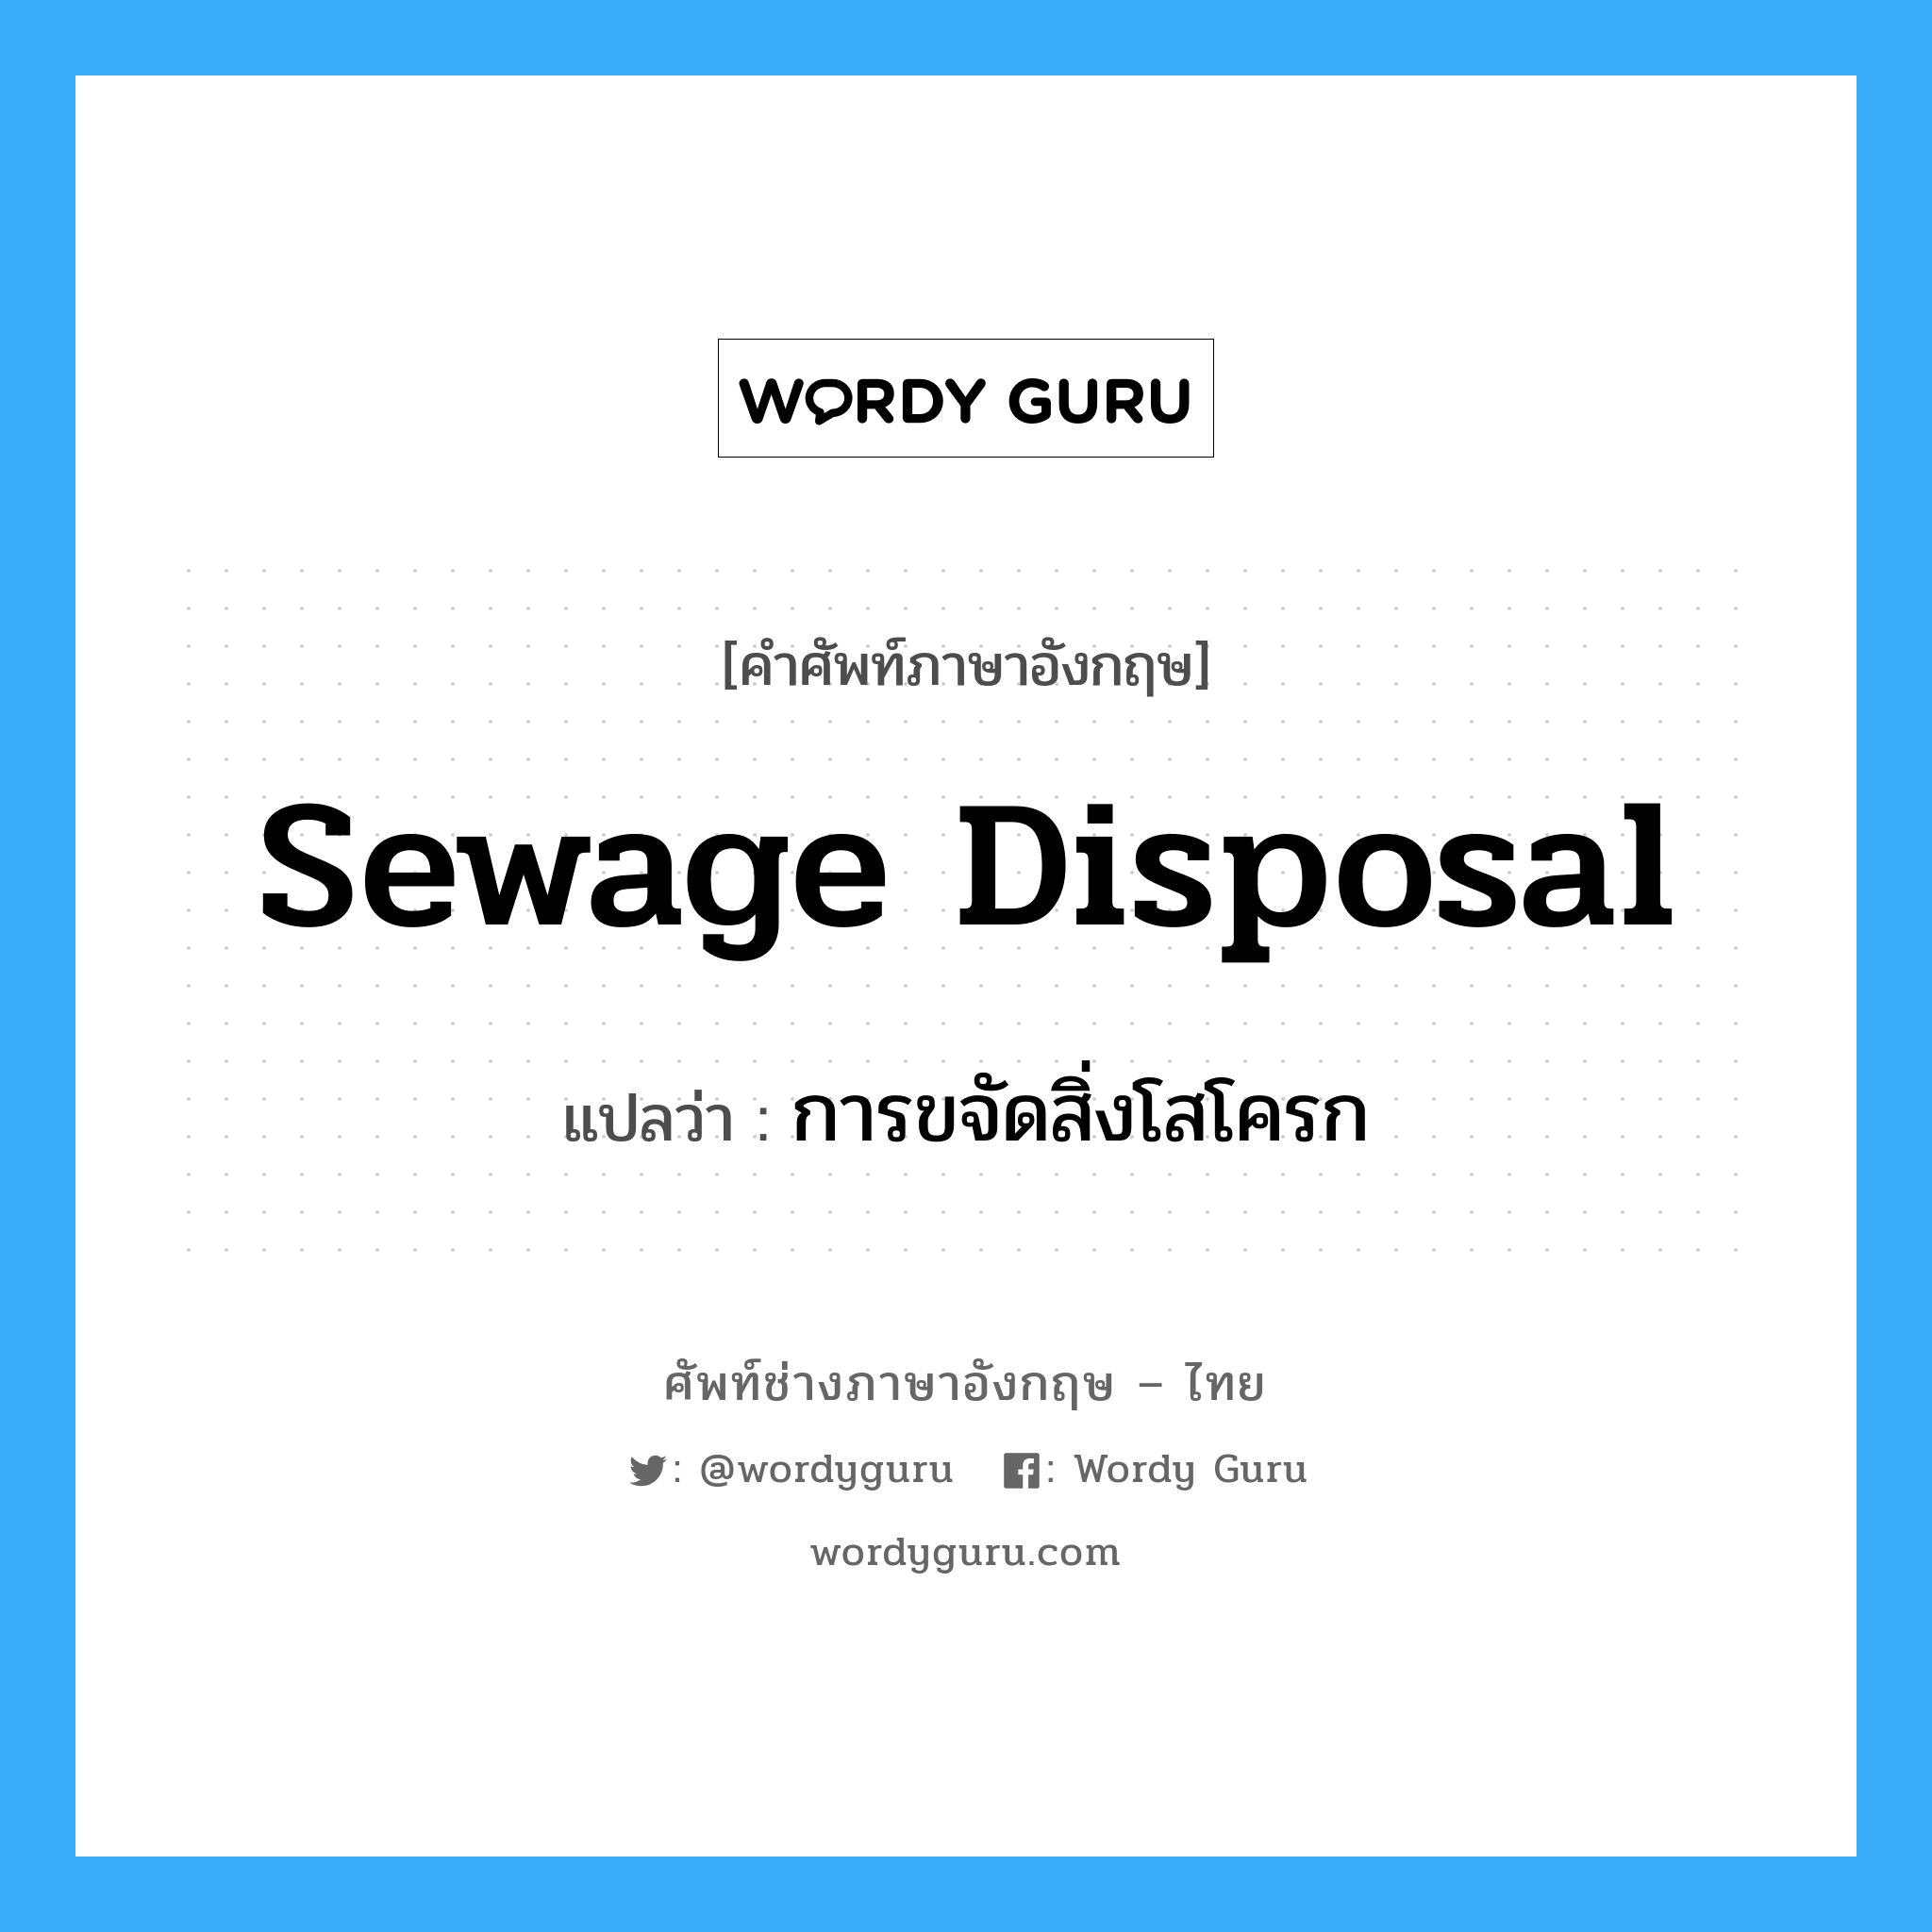 sewage disposal แปลว่า?, คำศัพท์ช่างภาษาอังกฤษ - ไทย sewage disposal คำศัพท์ภาษาอังกฤษ sewage disposal แปลว่า การขจัดสิ่งโสโครก